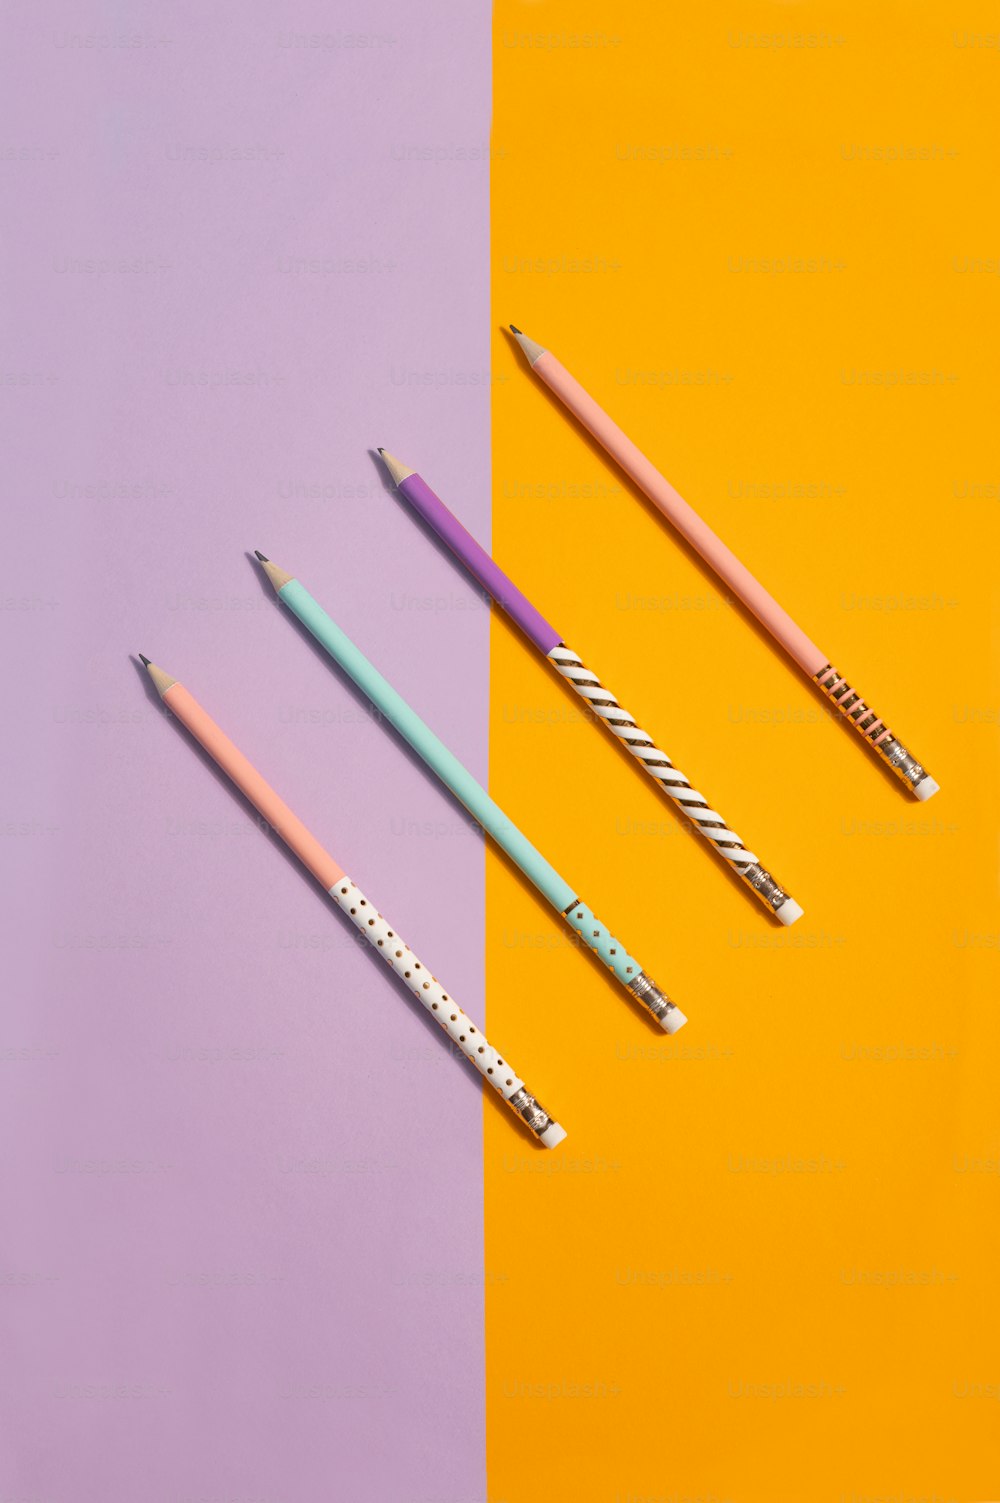 drei verschiedenfarbige Stifte nebeneinander